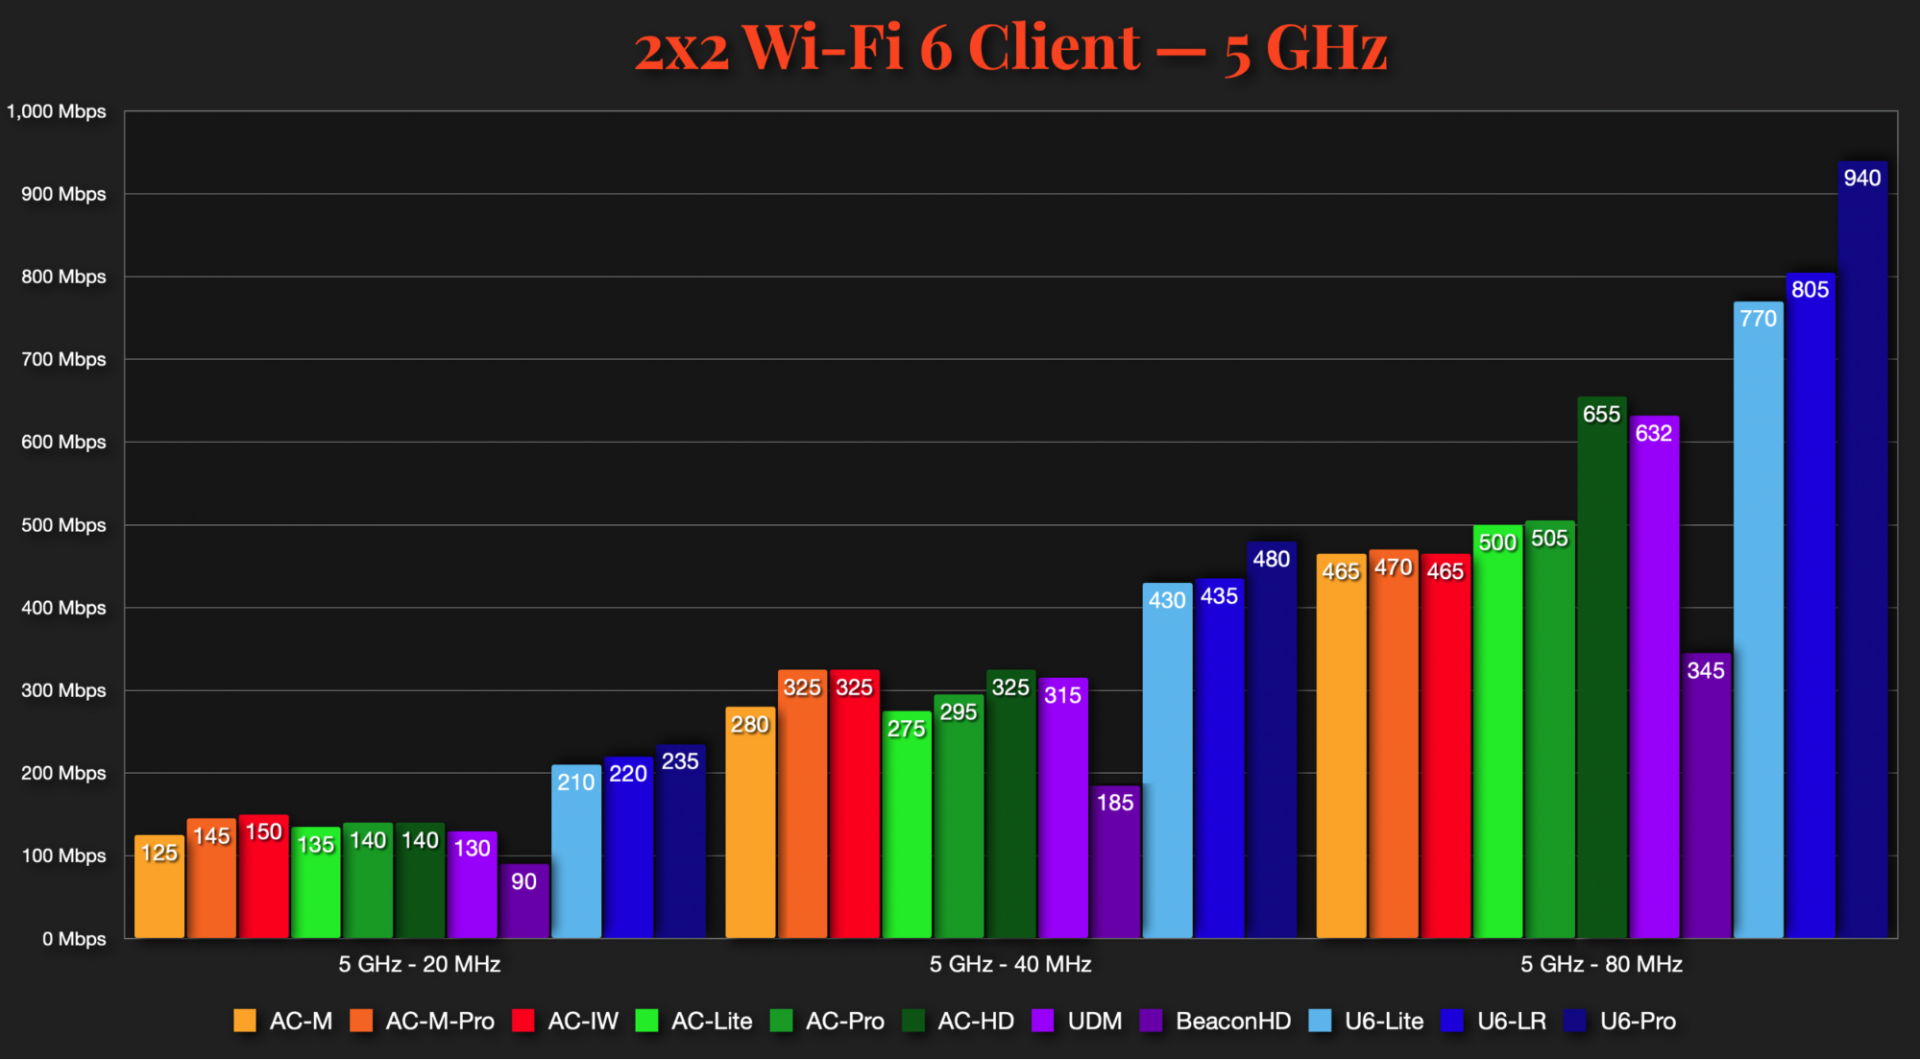 Kiểm tra tốc độ UniFi - 2x2 Wi-Fi 6 (5 GHz)